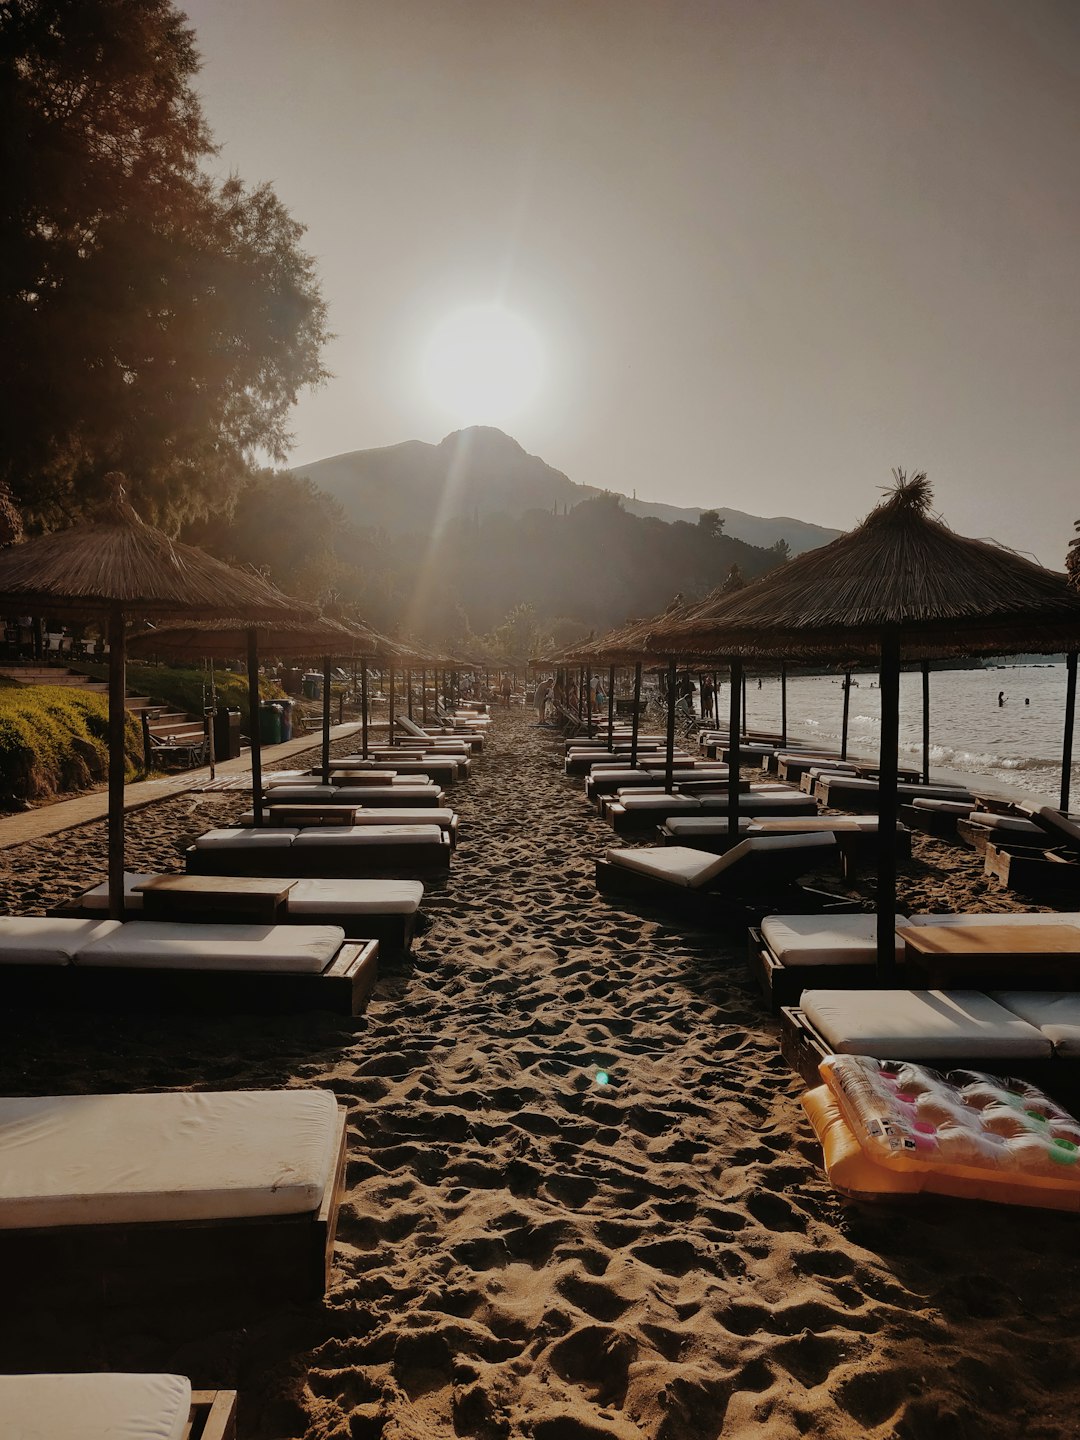 Resort photo spot Epar.Od. Zakinthou - Vasilikou Greece